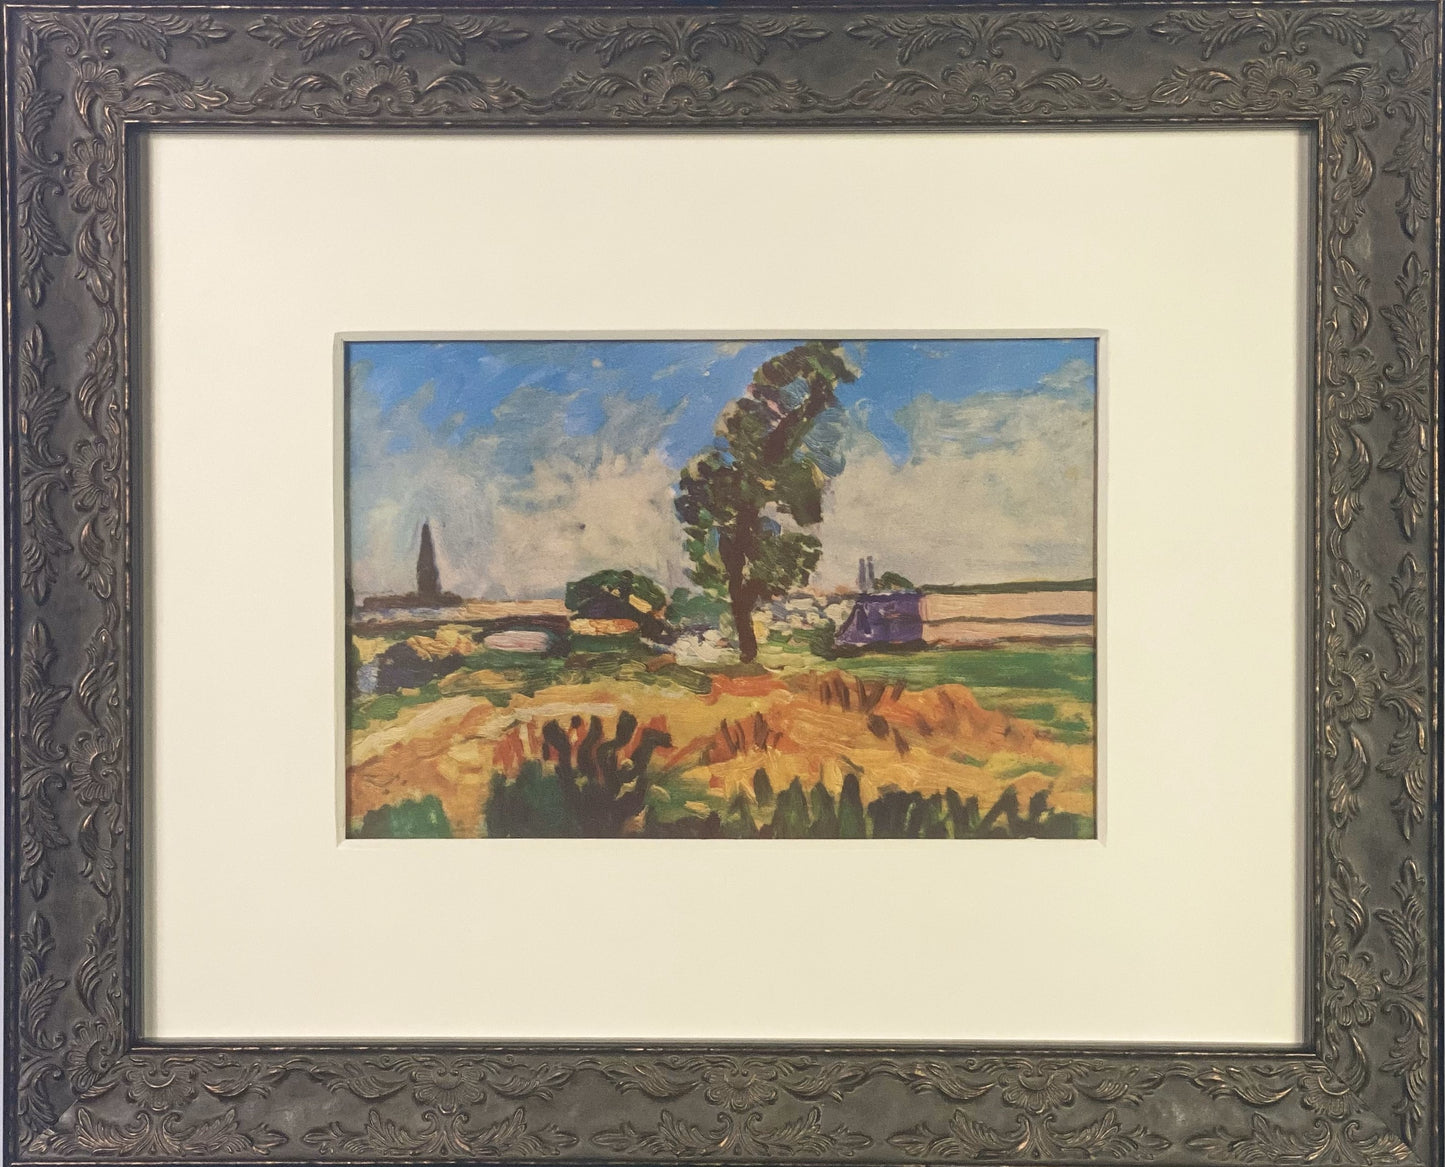 Henri Matisse Lithograph "Toulouse Landscape "